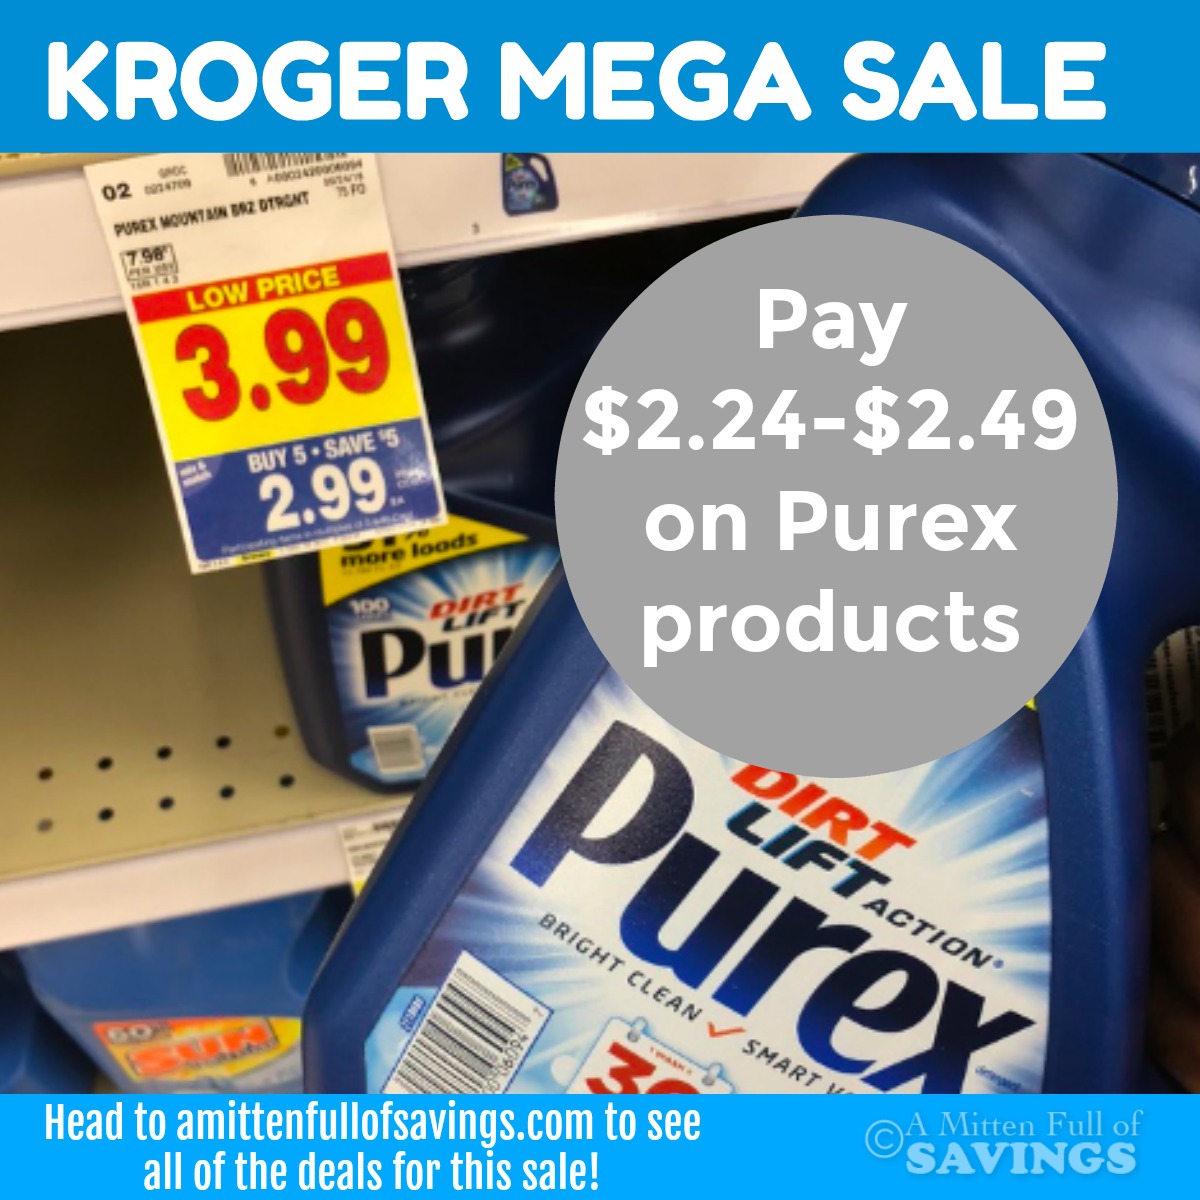 Kroger MEGA: Grab Purex Crystals + Liquid Detergent as low as $2.24